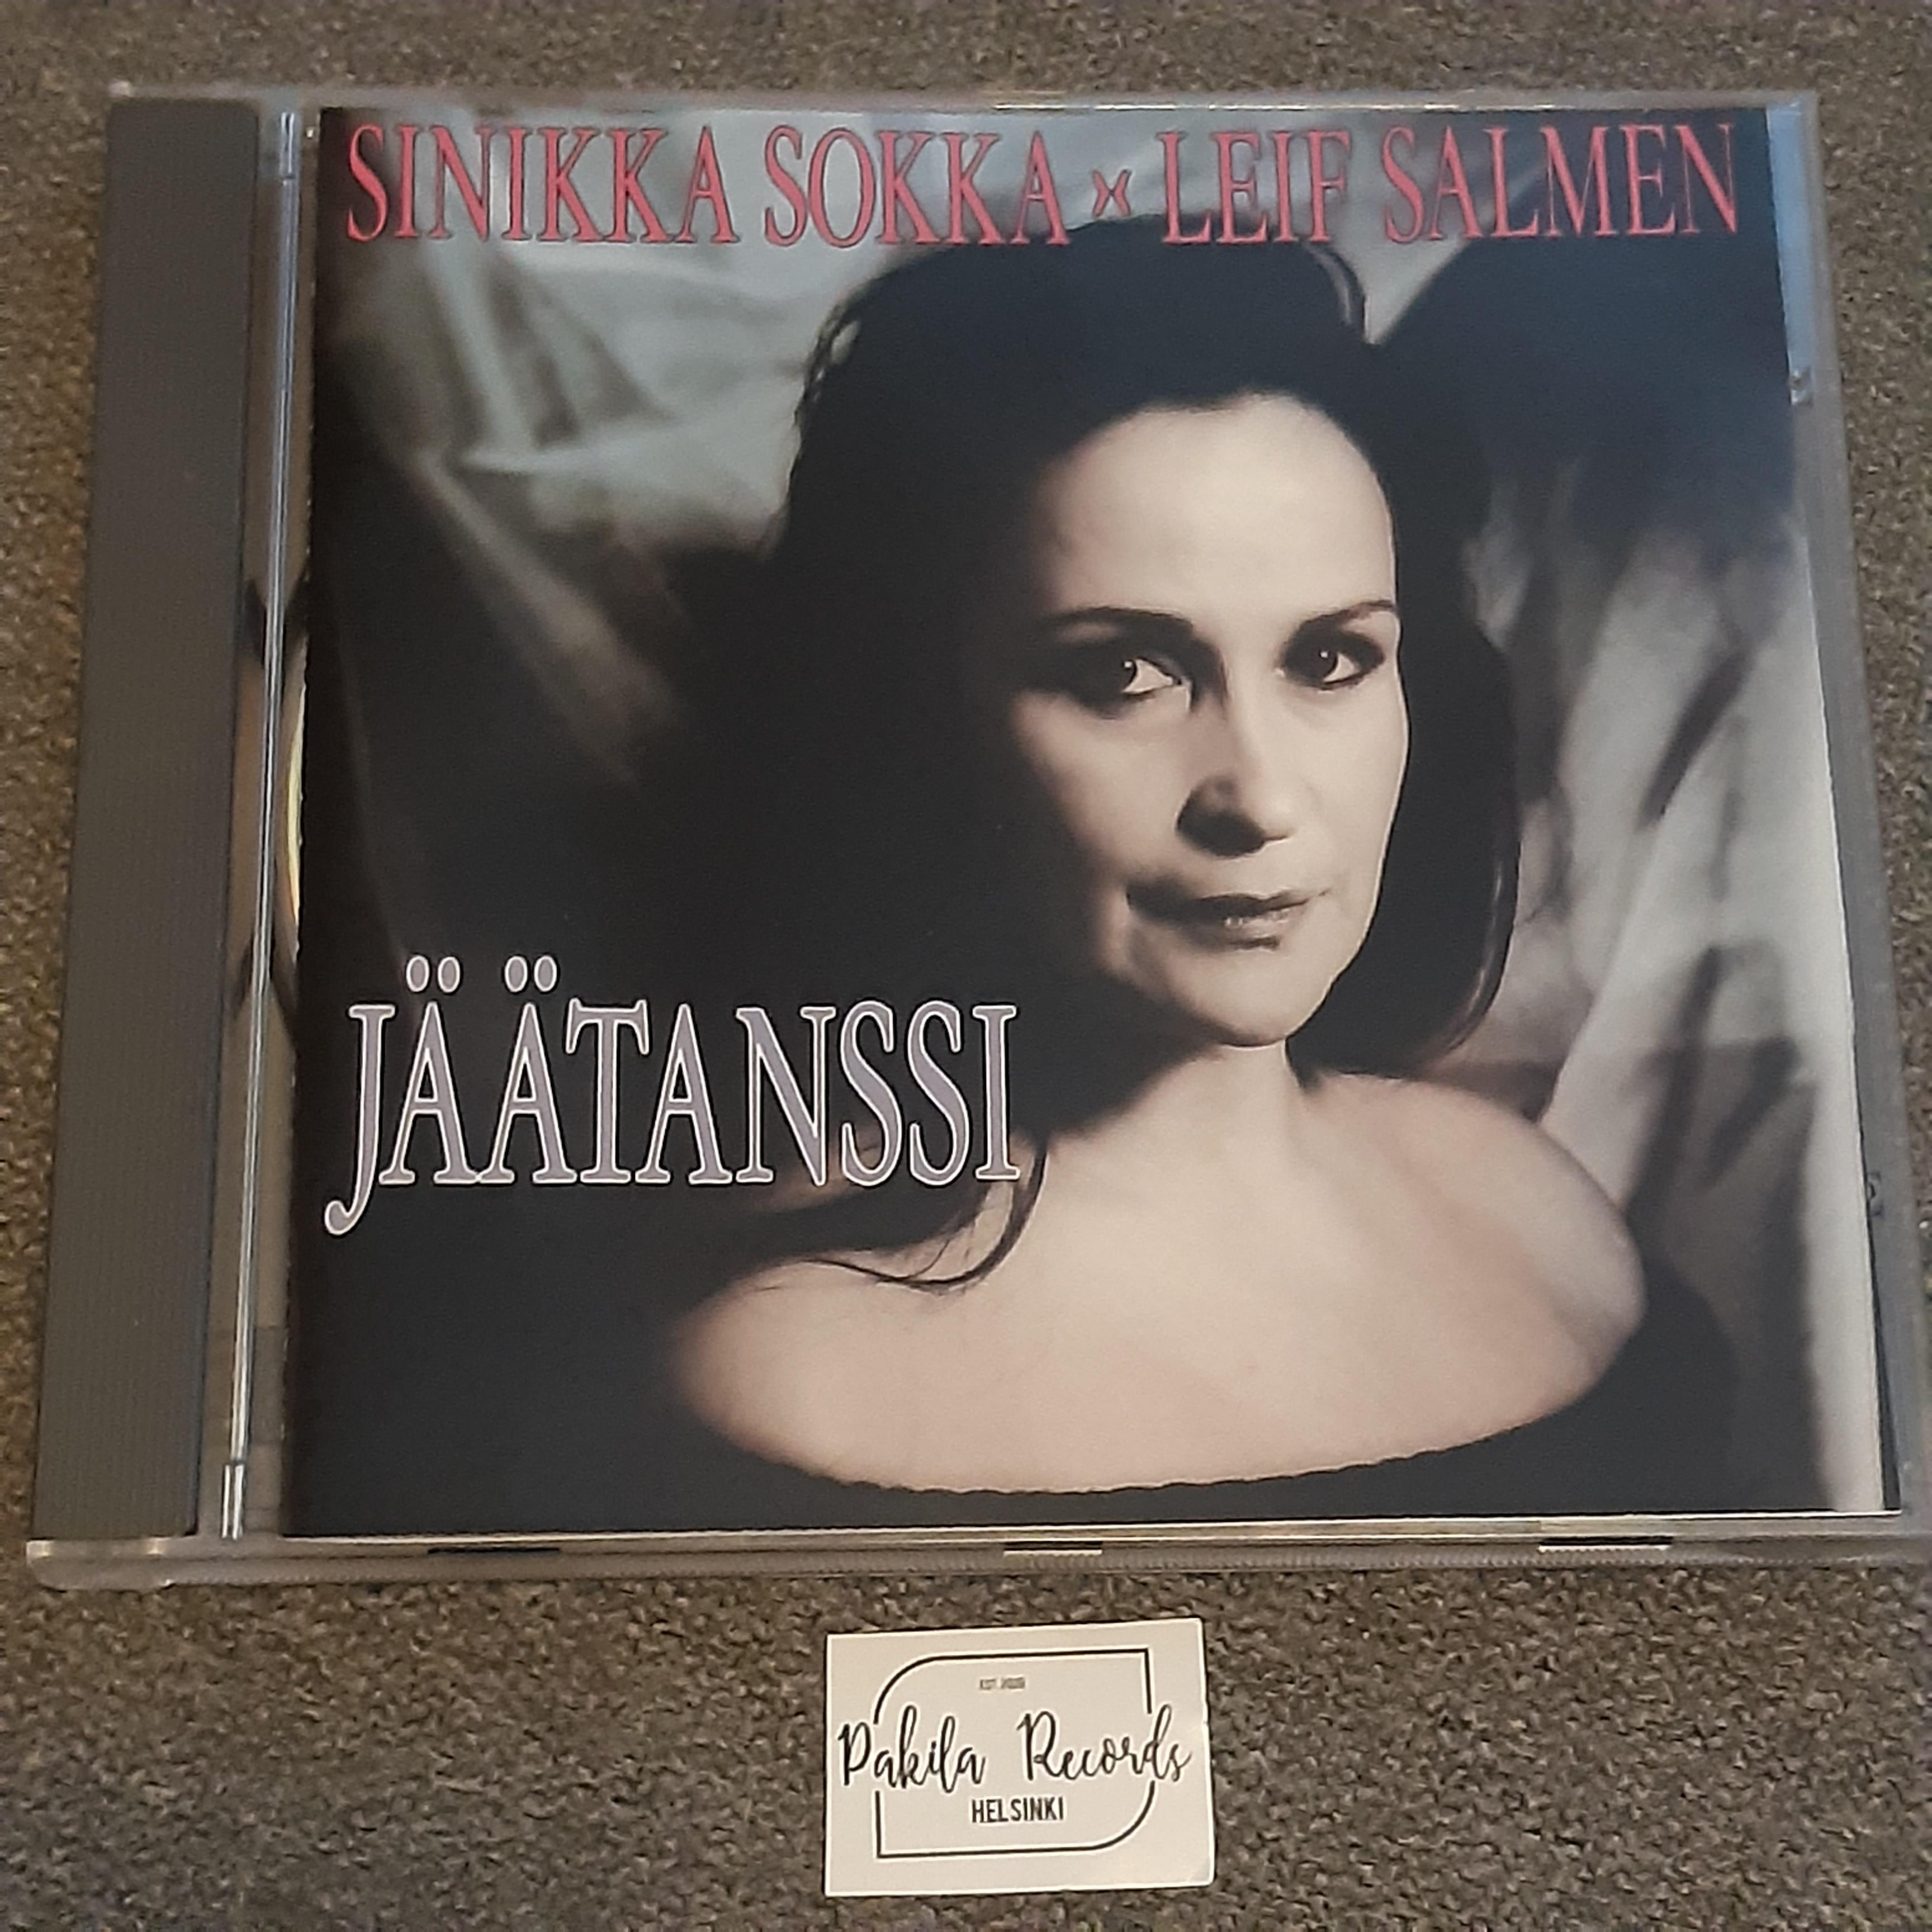 Sinikka Sokka, Leif Salmen - Jäätanssi - CD (käytetty)